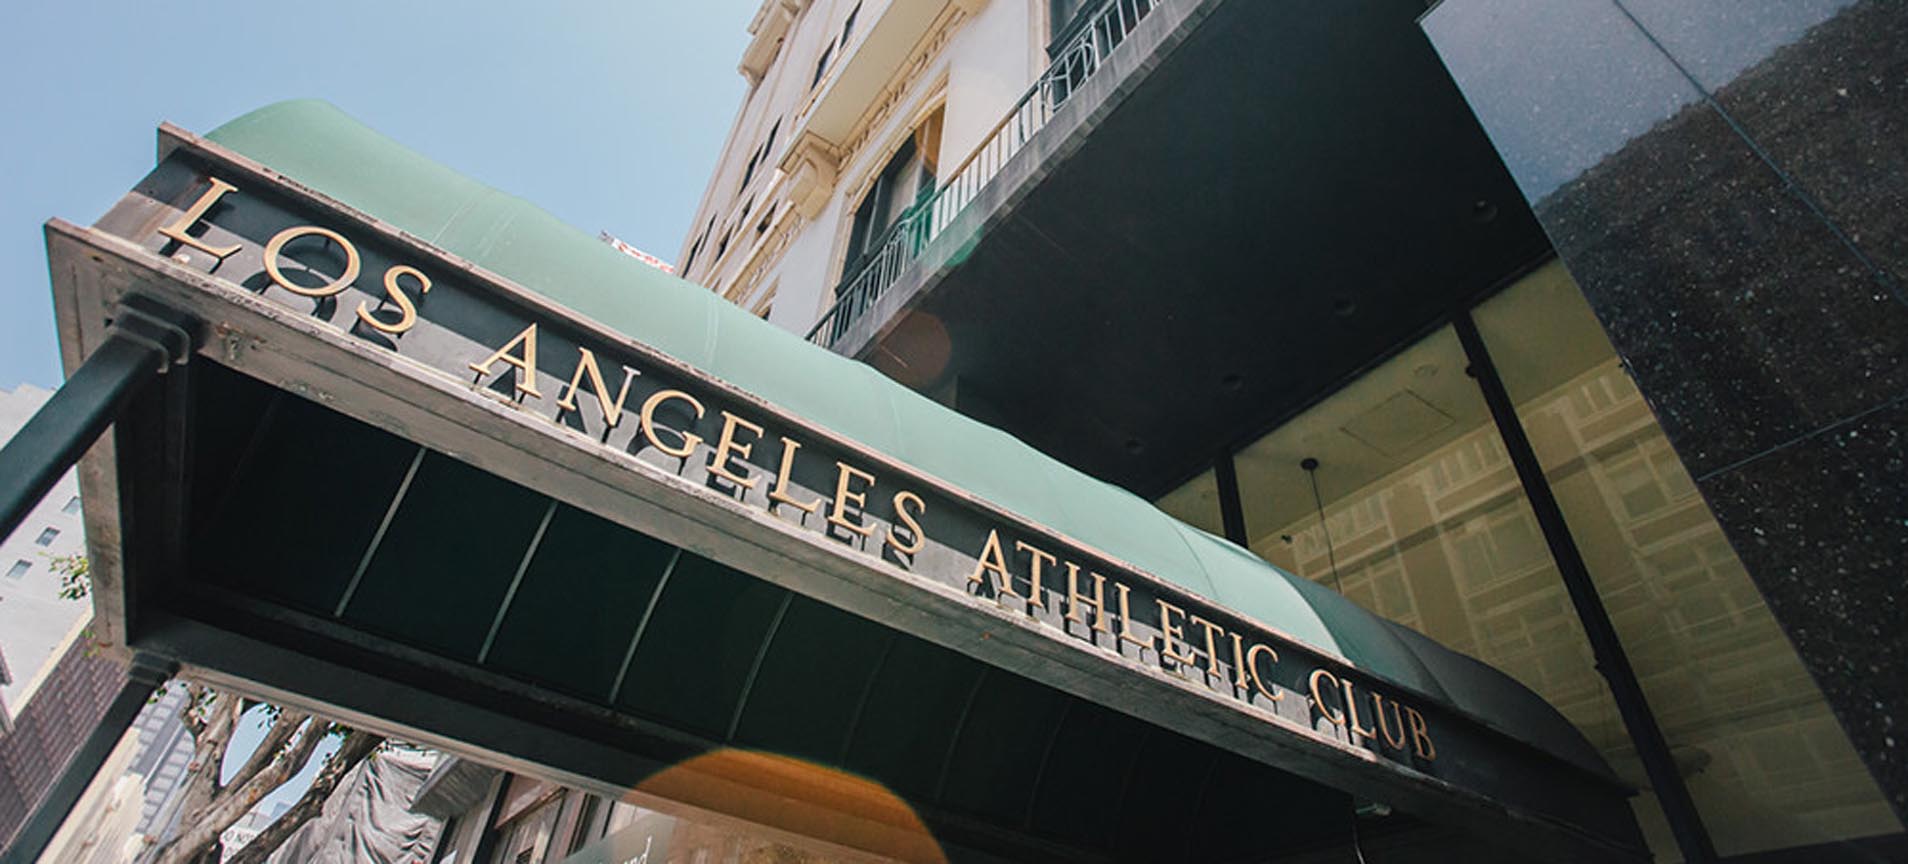 La Athletic Club Hotel – Los Angeles, CA - Landmark Construction ...